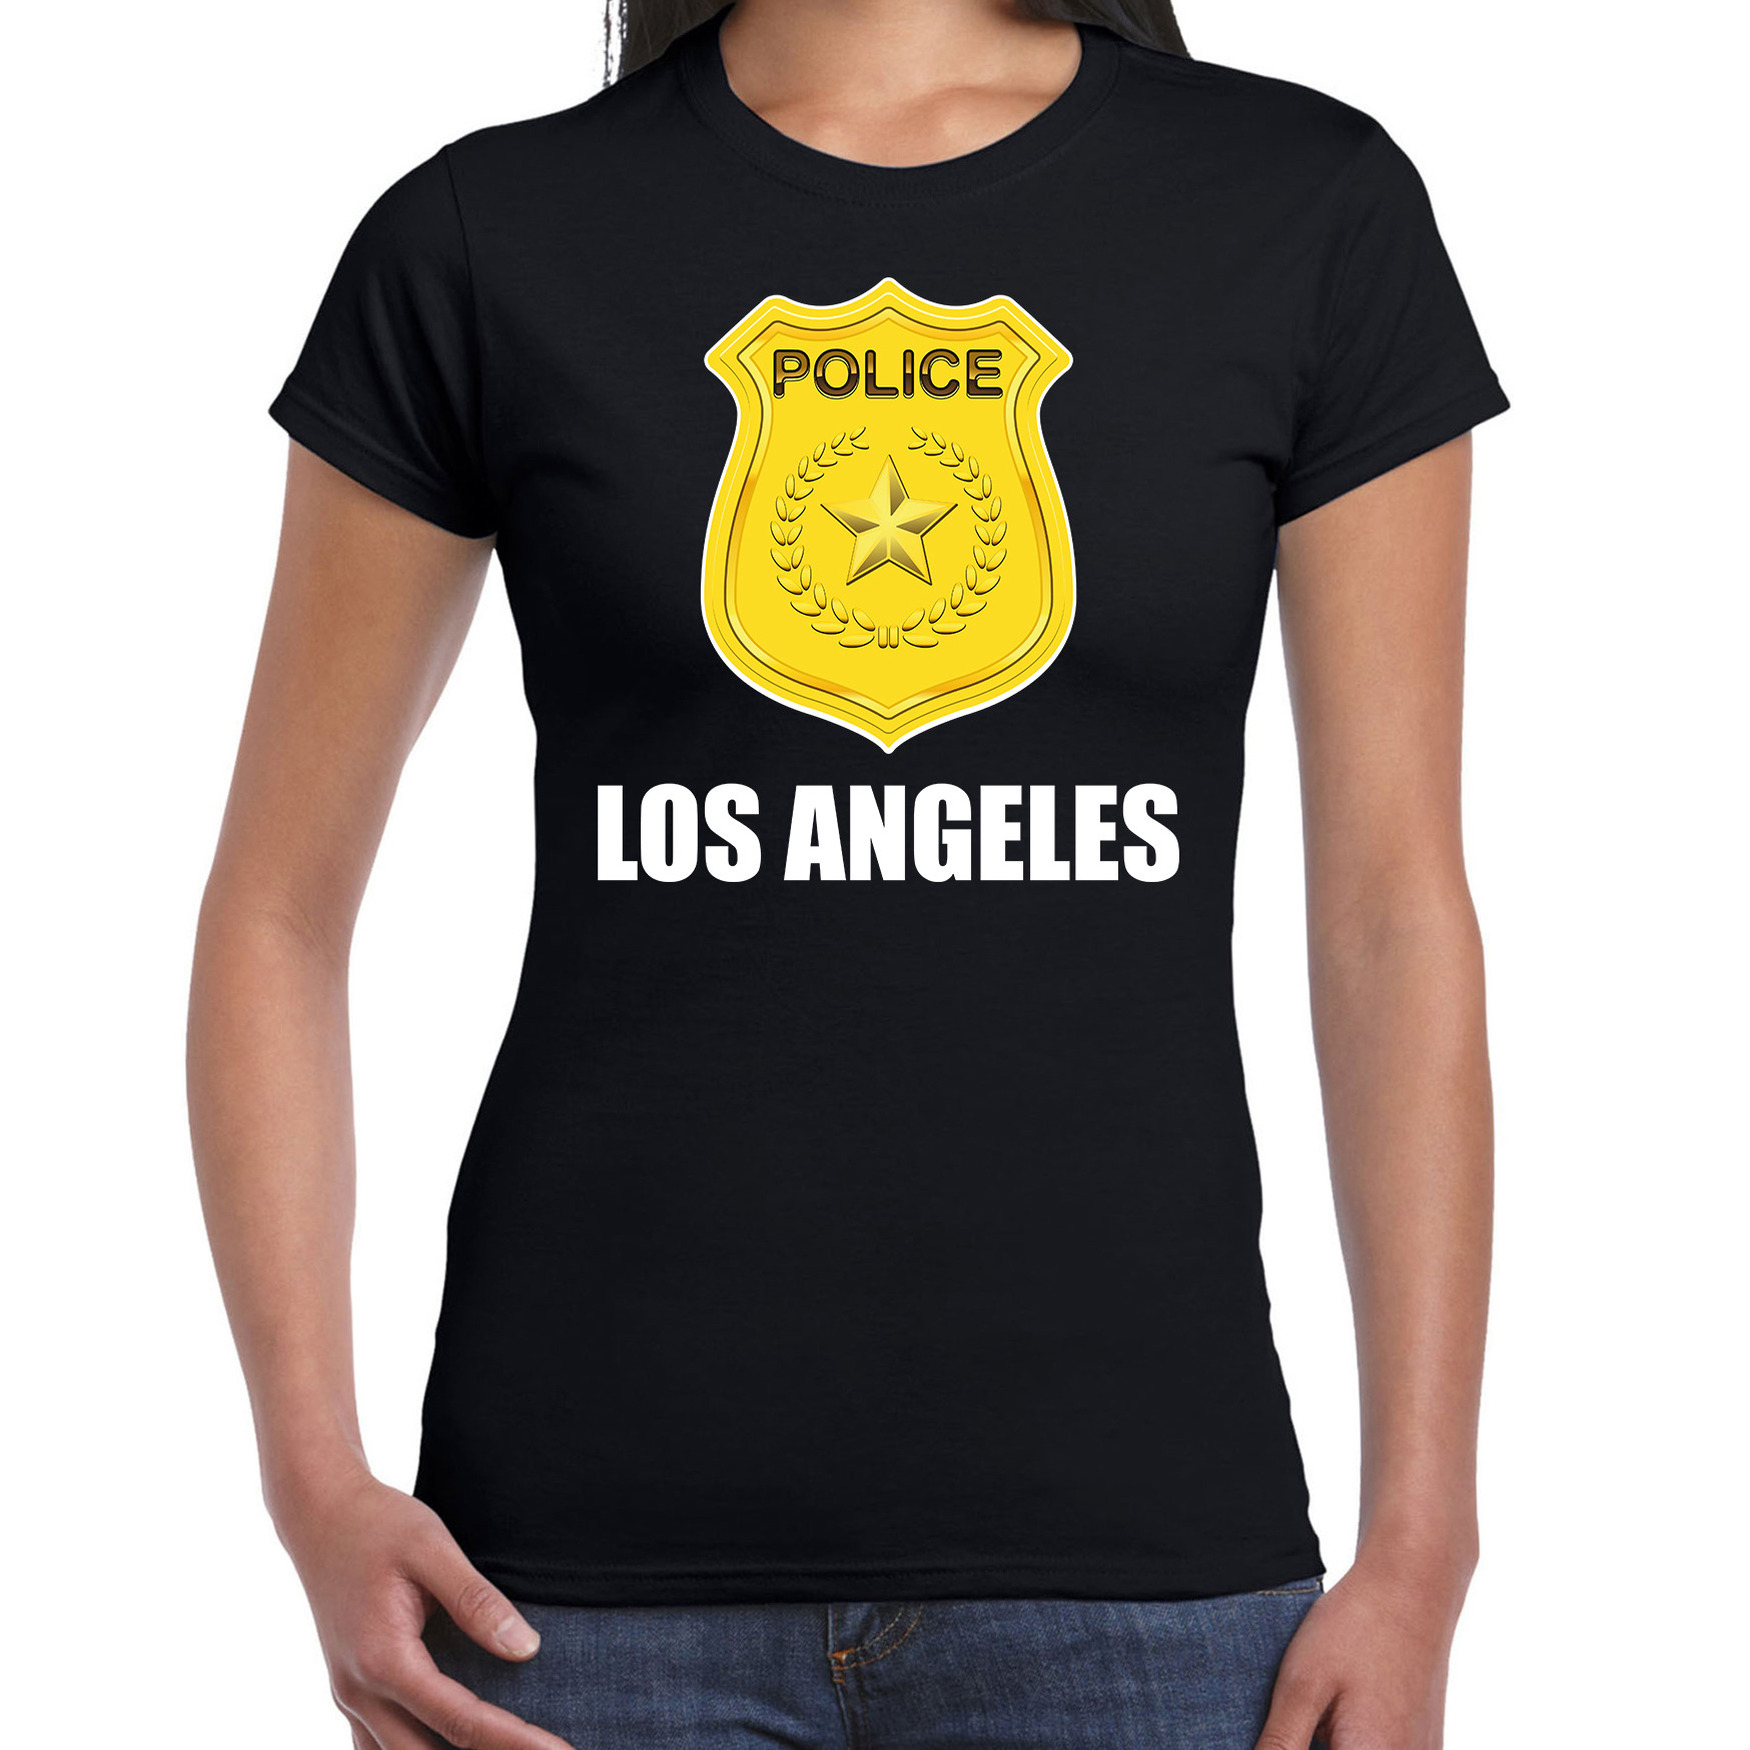 Los Angeles politie-police embleem t-shirt zwart voor dames